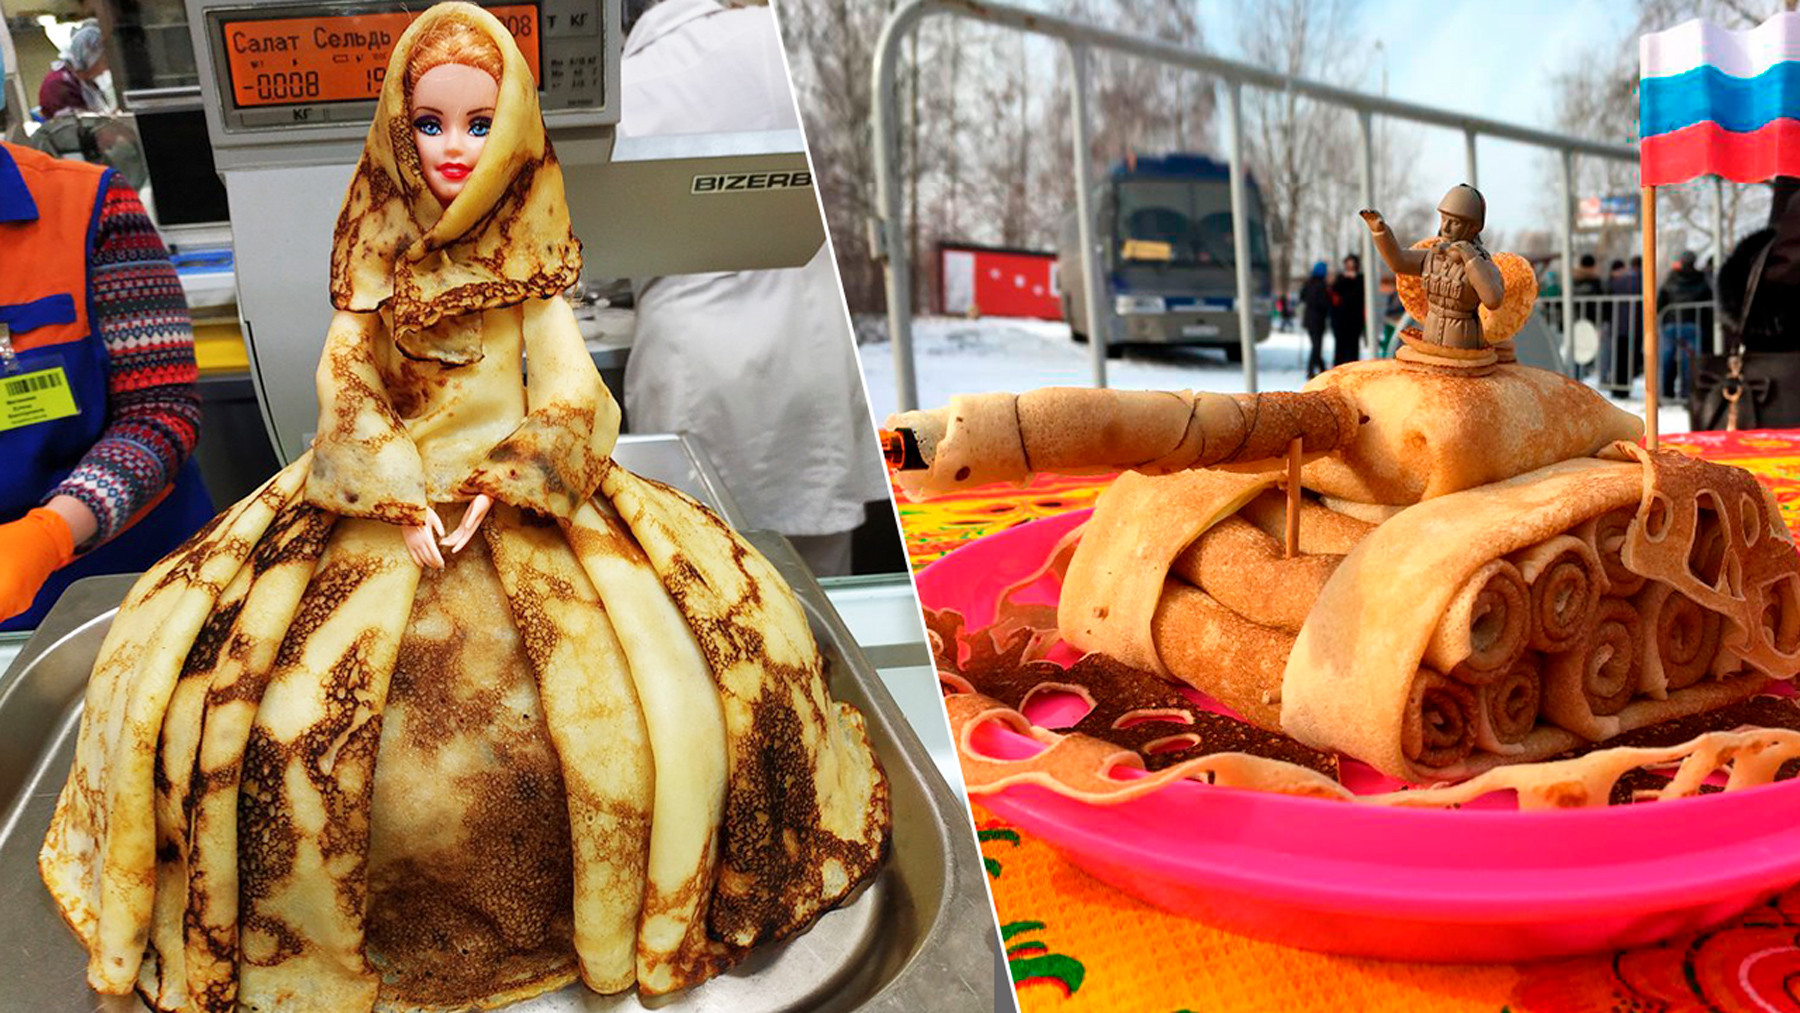 マースレニツァのパンケーキでバービー人形に洋服を着せるロシア人 ロシア ビヨンド